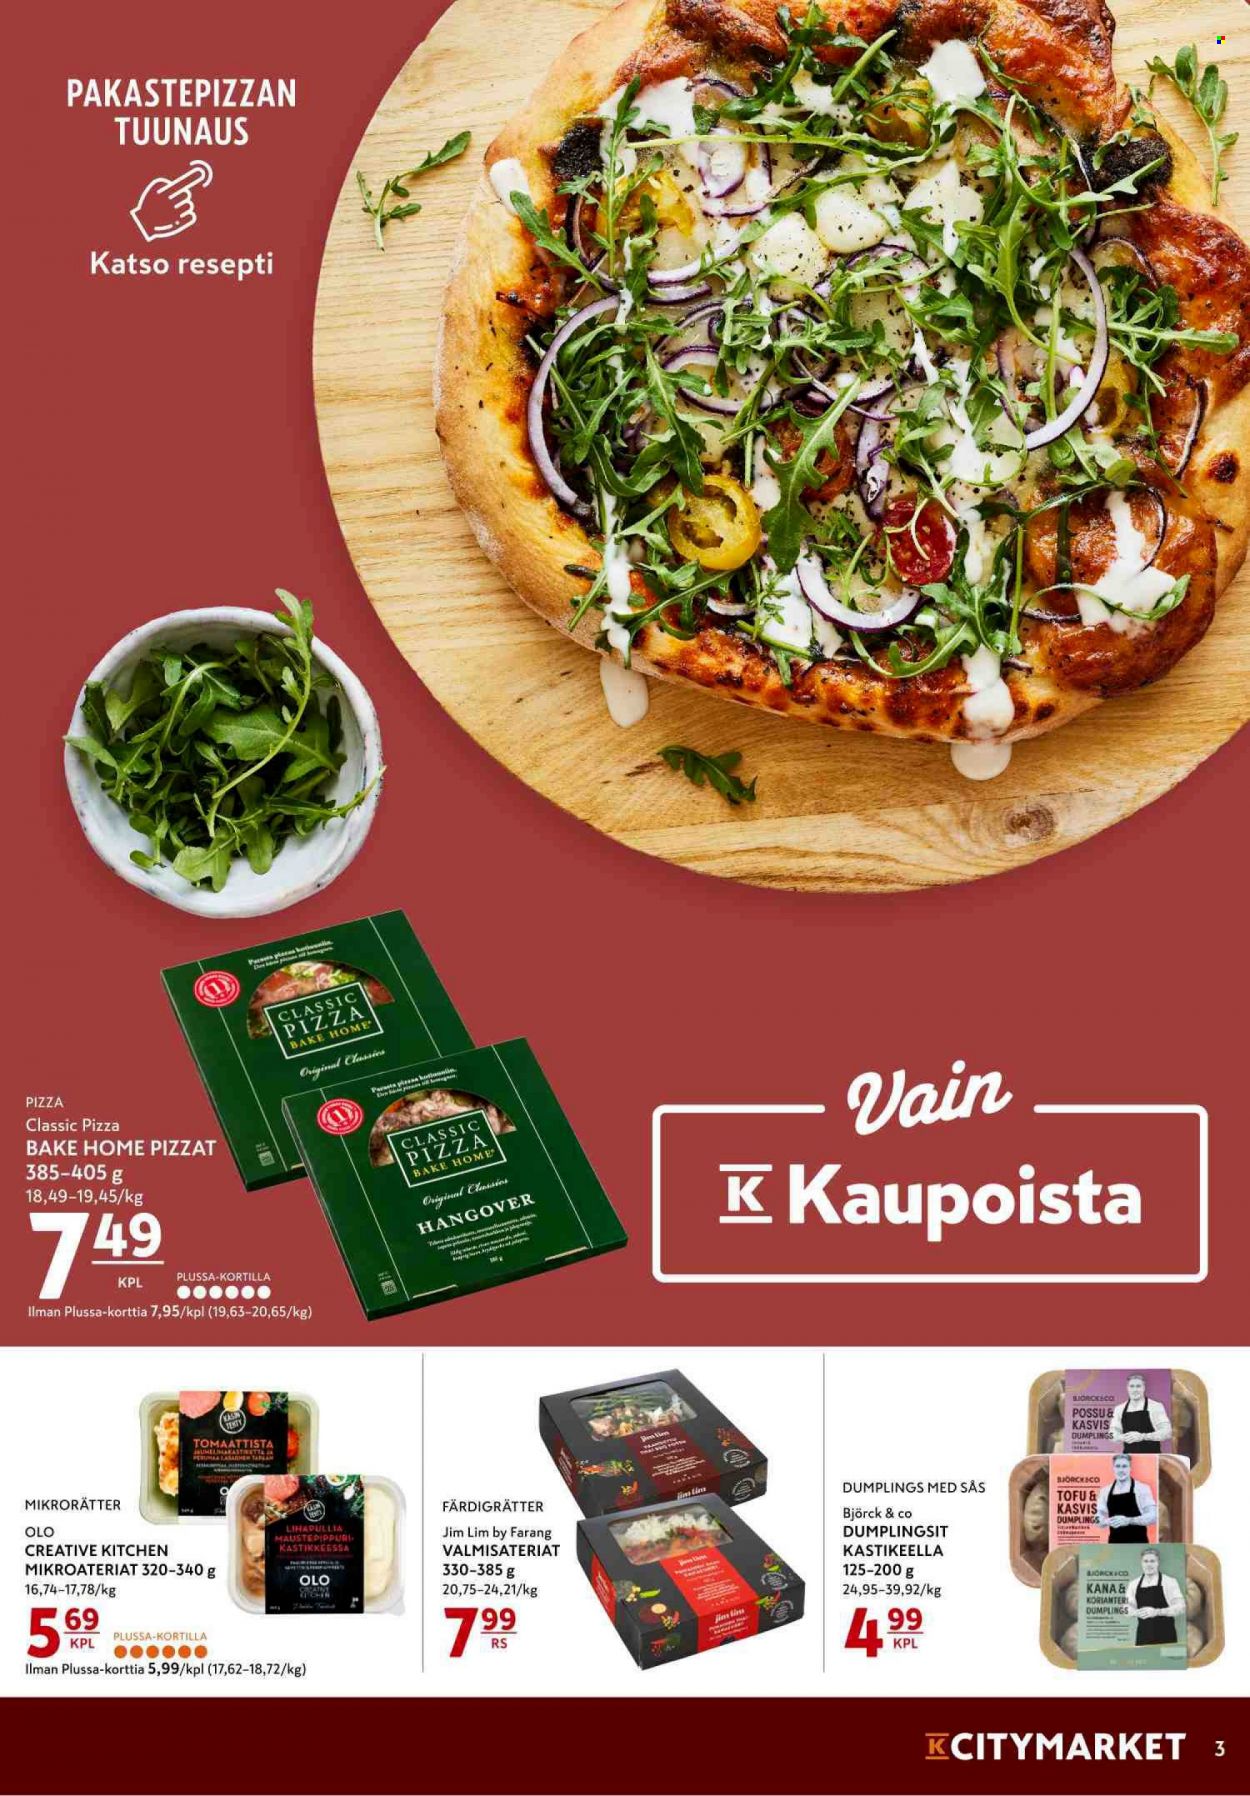 thumbnail - K-citymarket tarjoukset  - 11.10.2021 - 13.10.2021 - Tarjoustuotteet - pizza, tofu. Sivu 3.